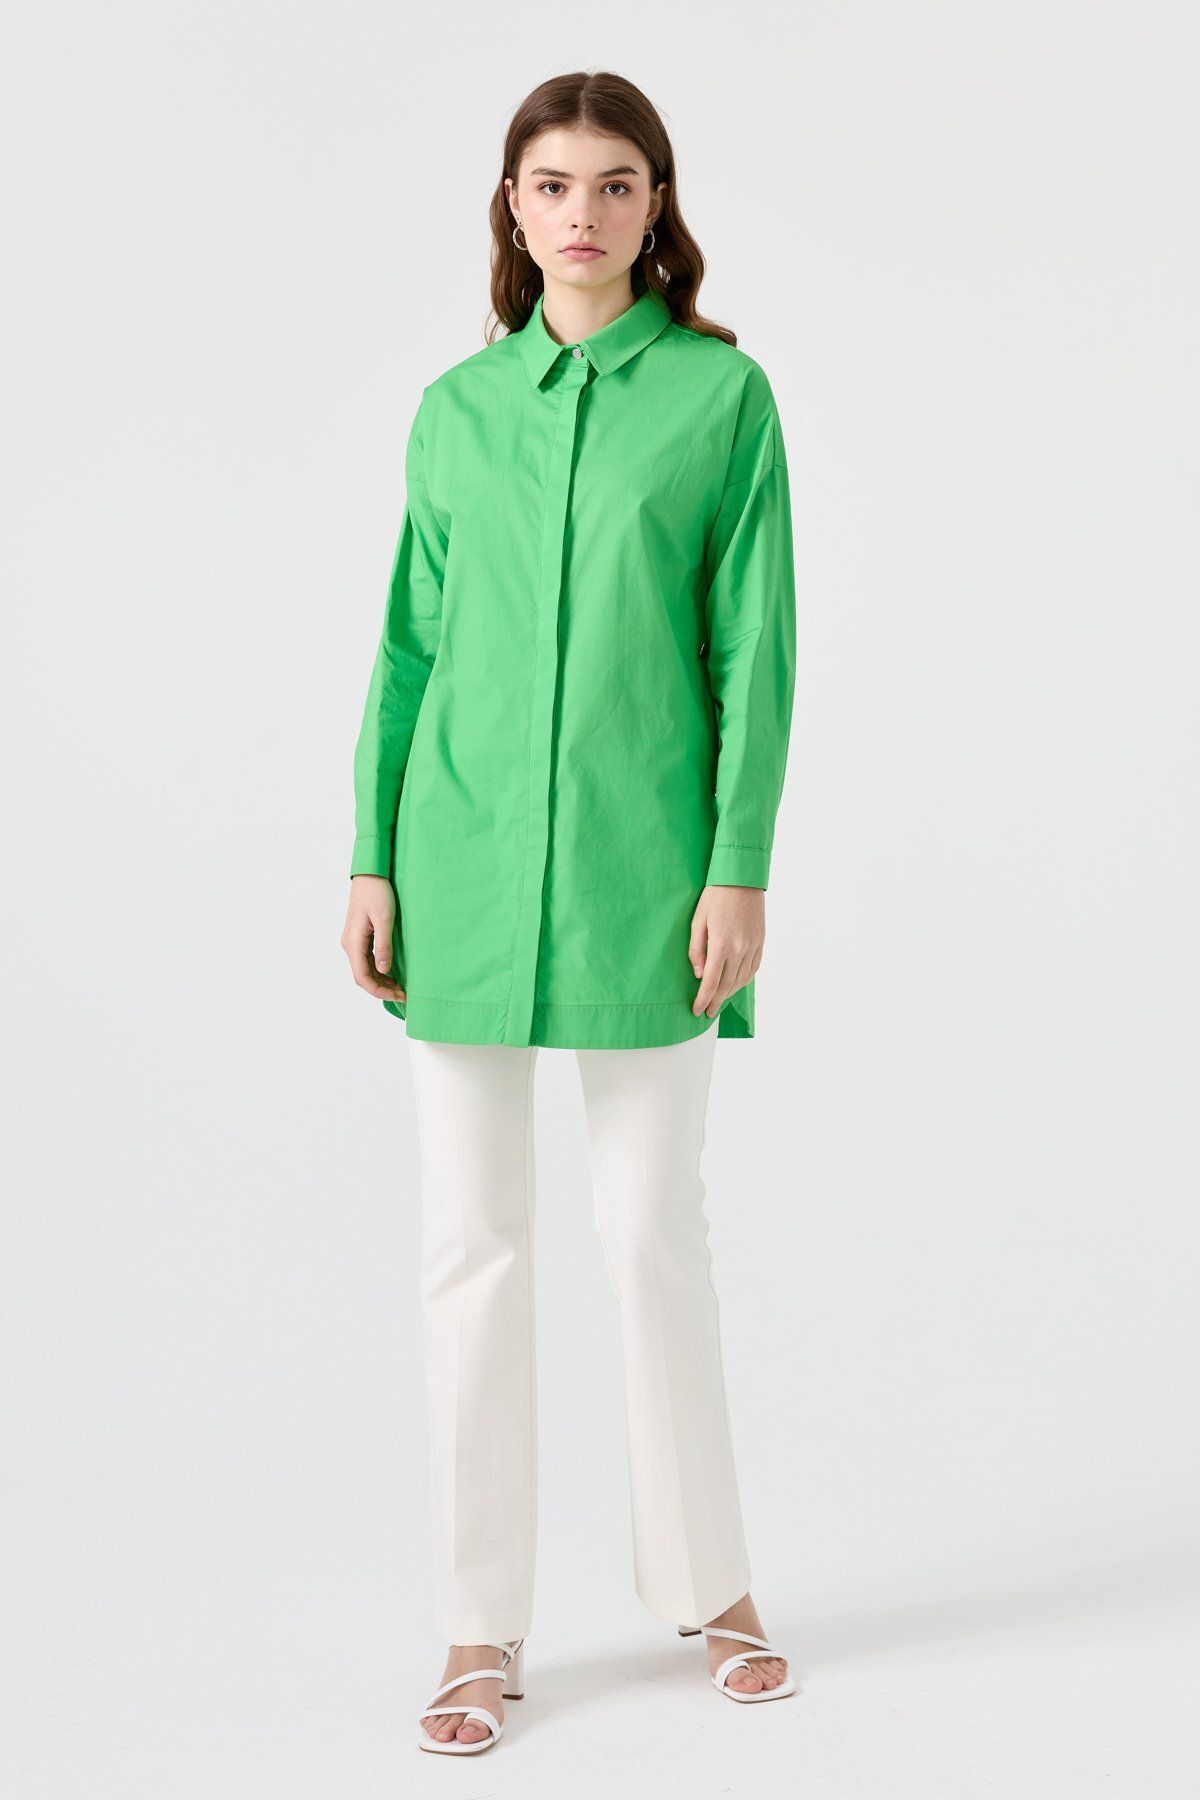 Nihan Yanları Metal Düğmeli Poplin Gömlek Tunik Benetton Yeşili